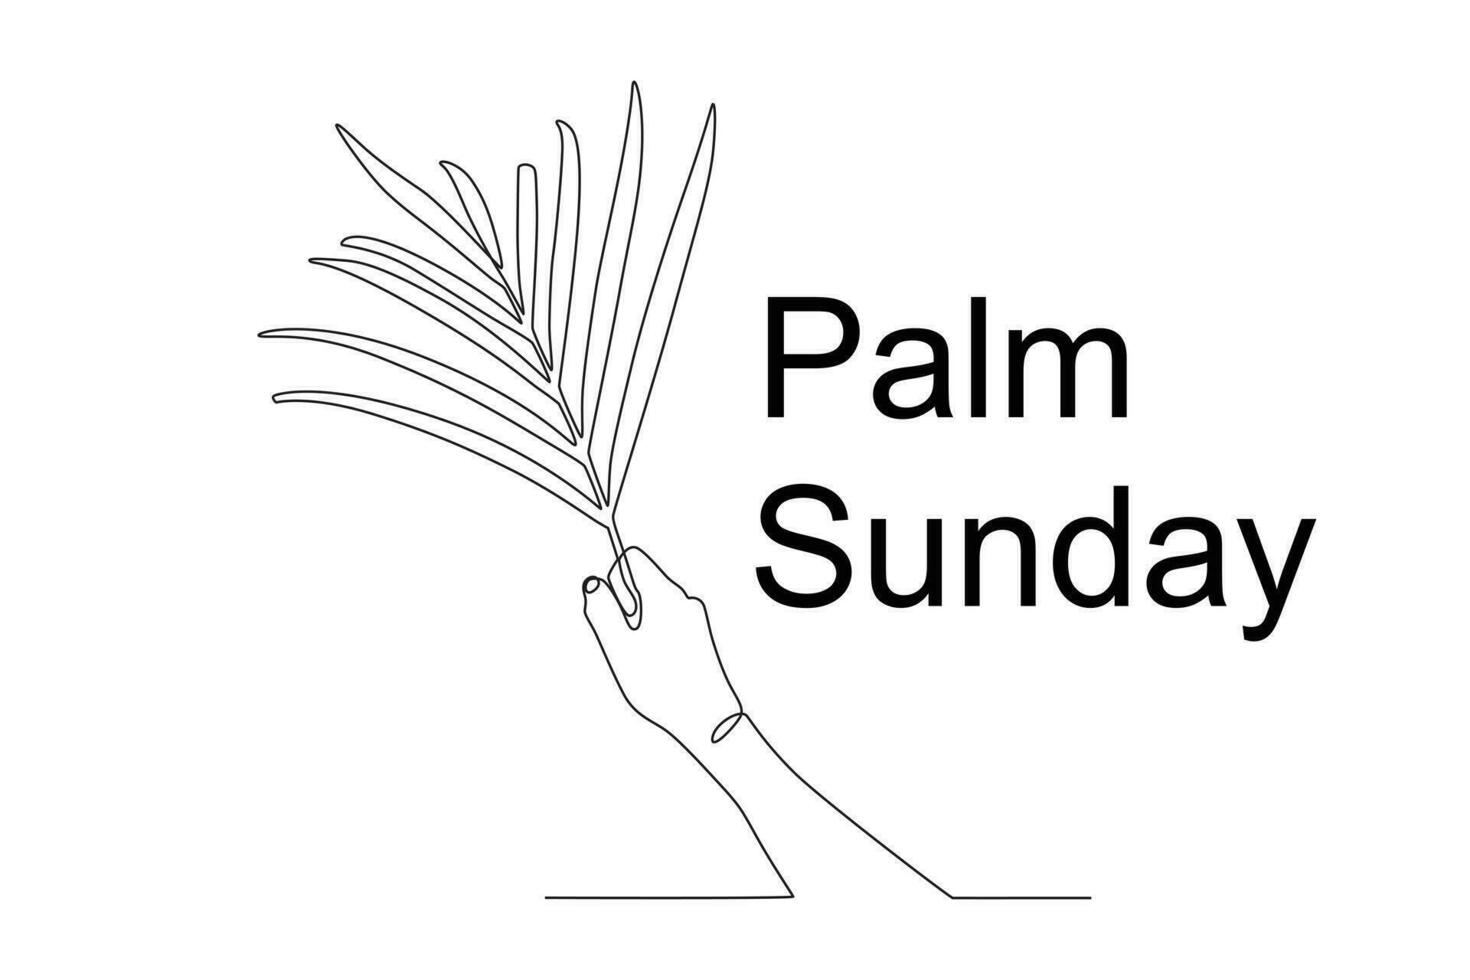 palma hojas son un símbolo de palma domingo vector